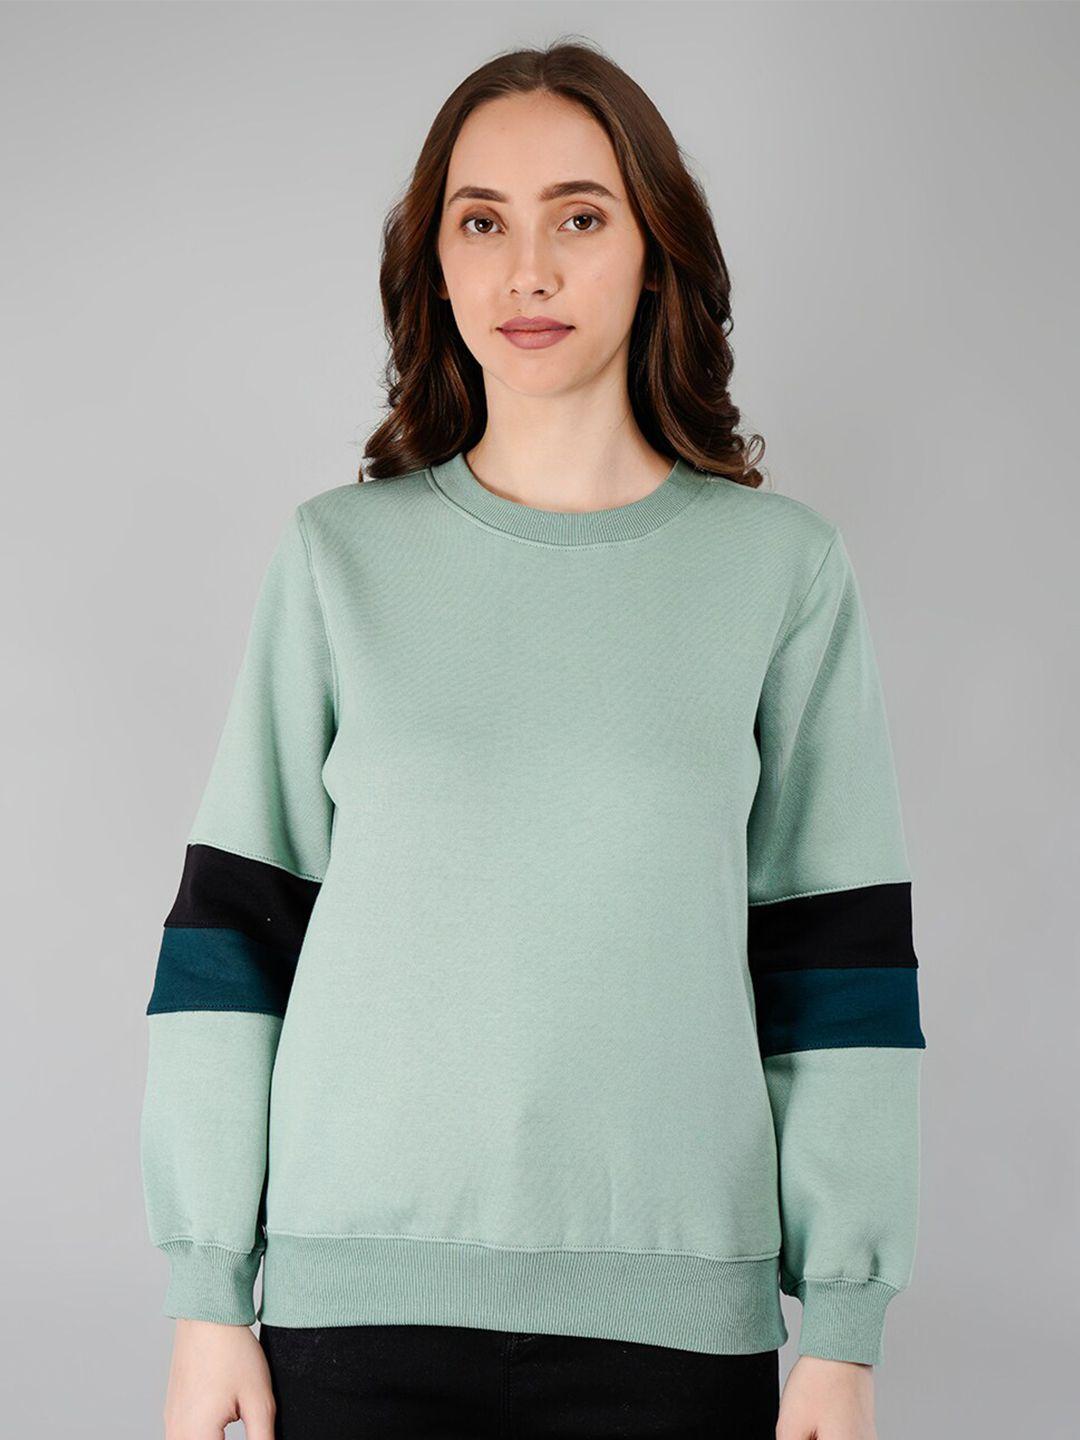 besimple women multicoloured striped sweatshirt